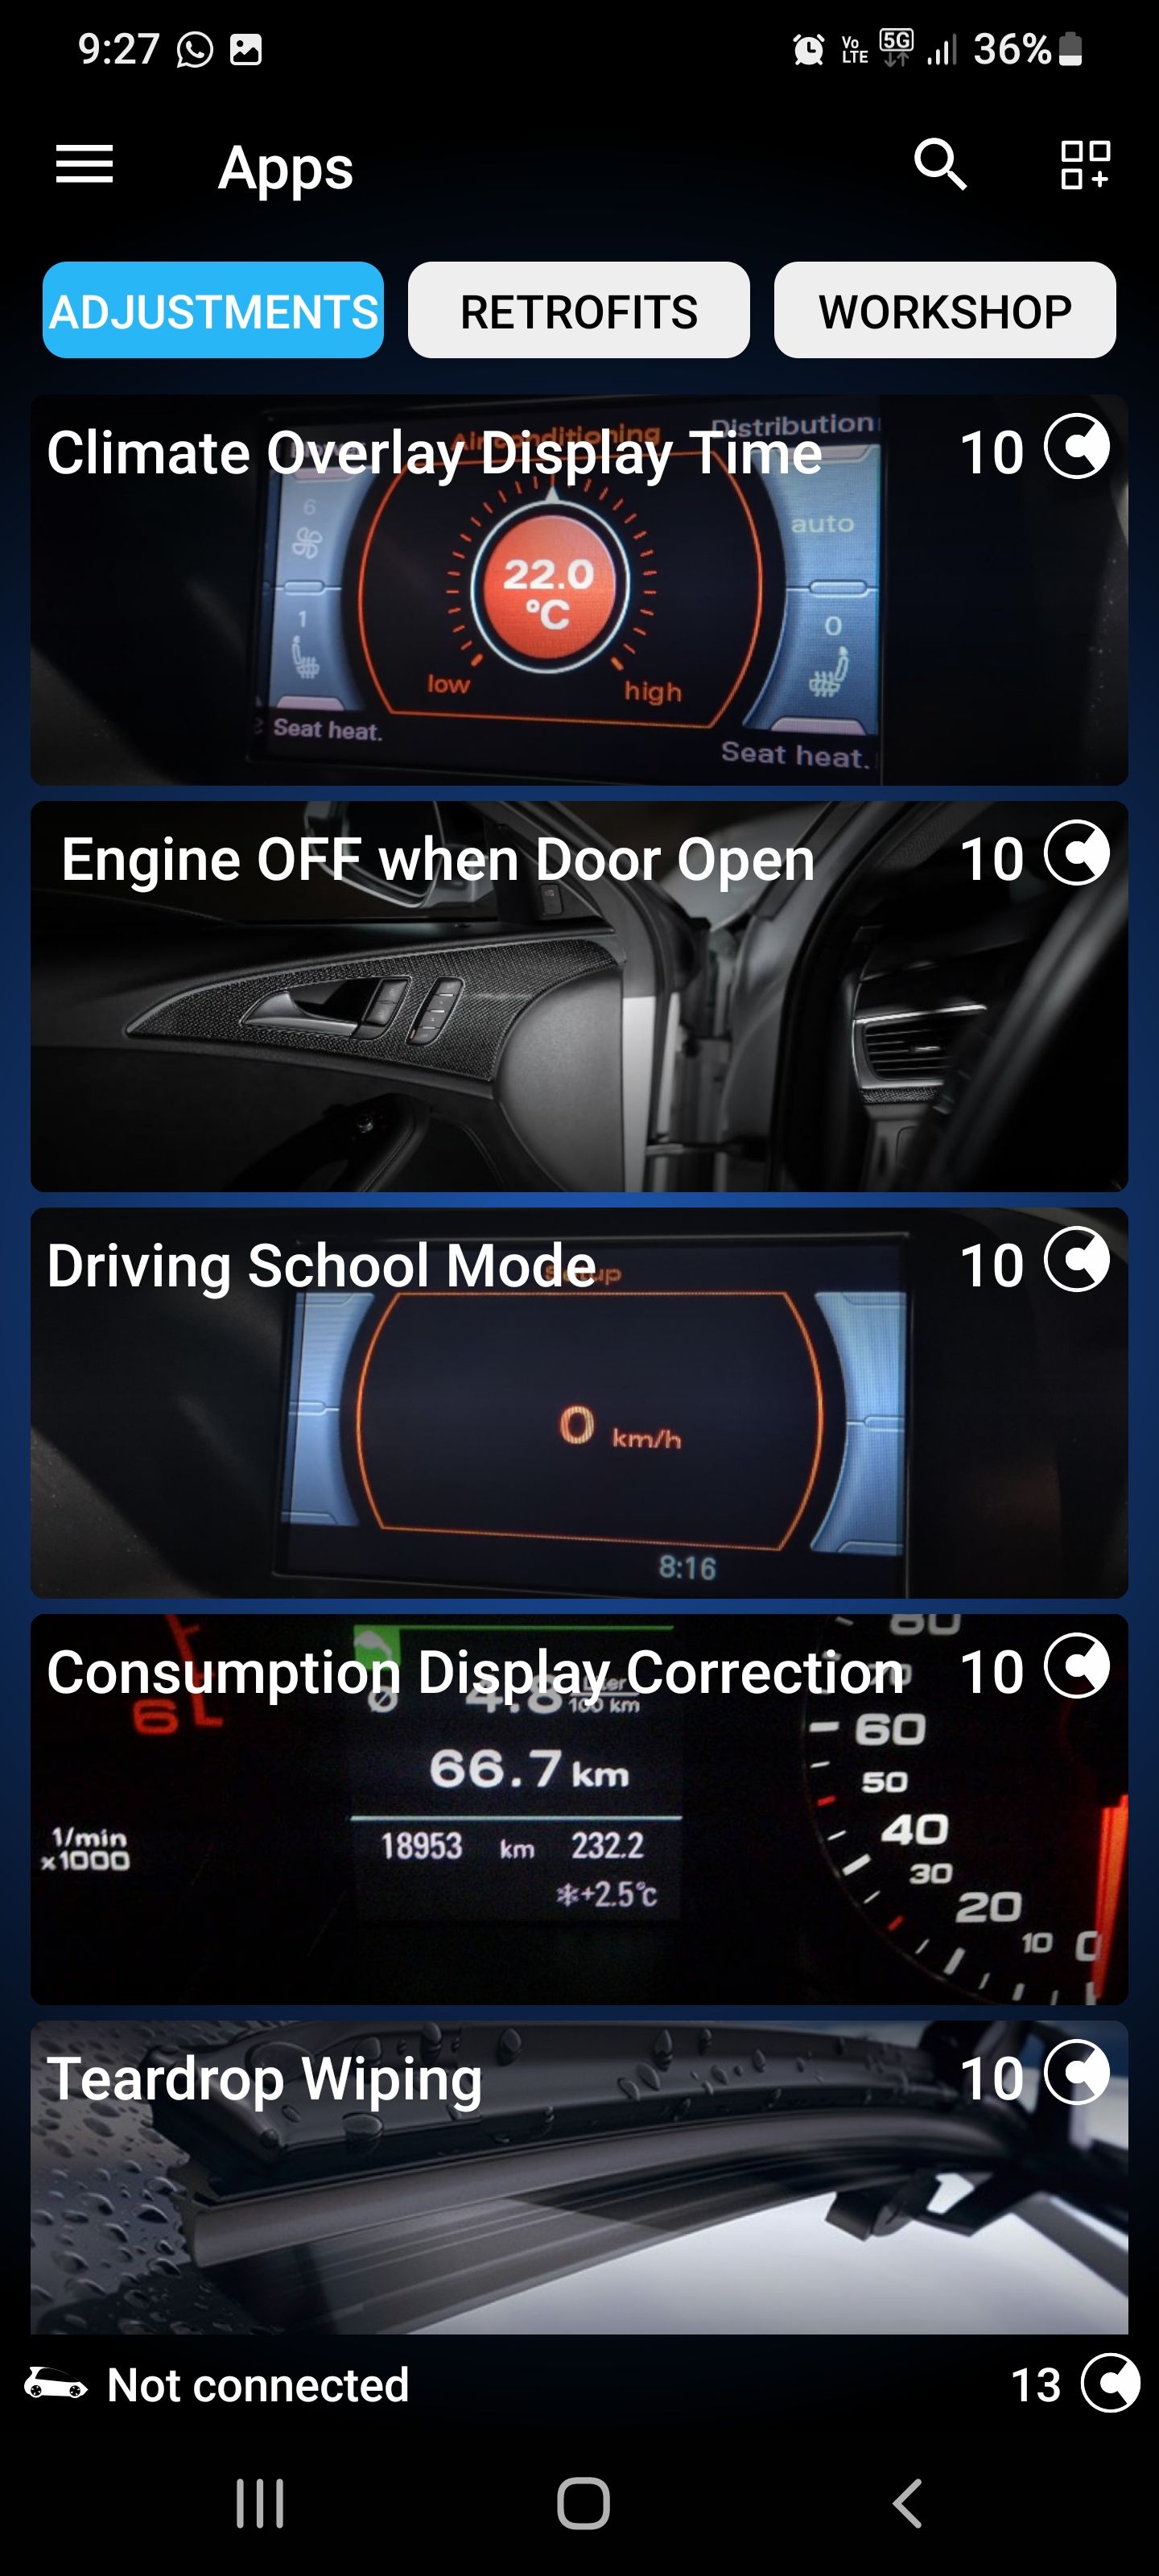 screenshot of OBDeleven app showing Apps menu